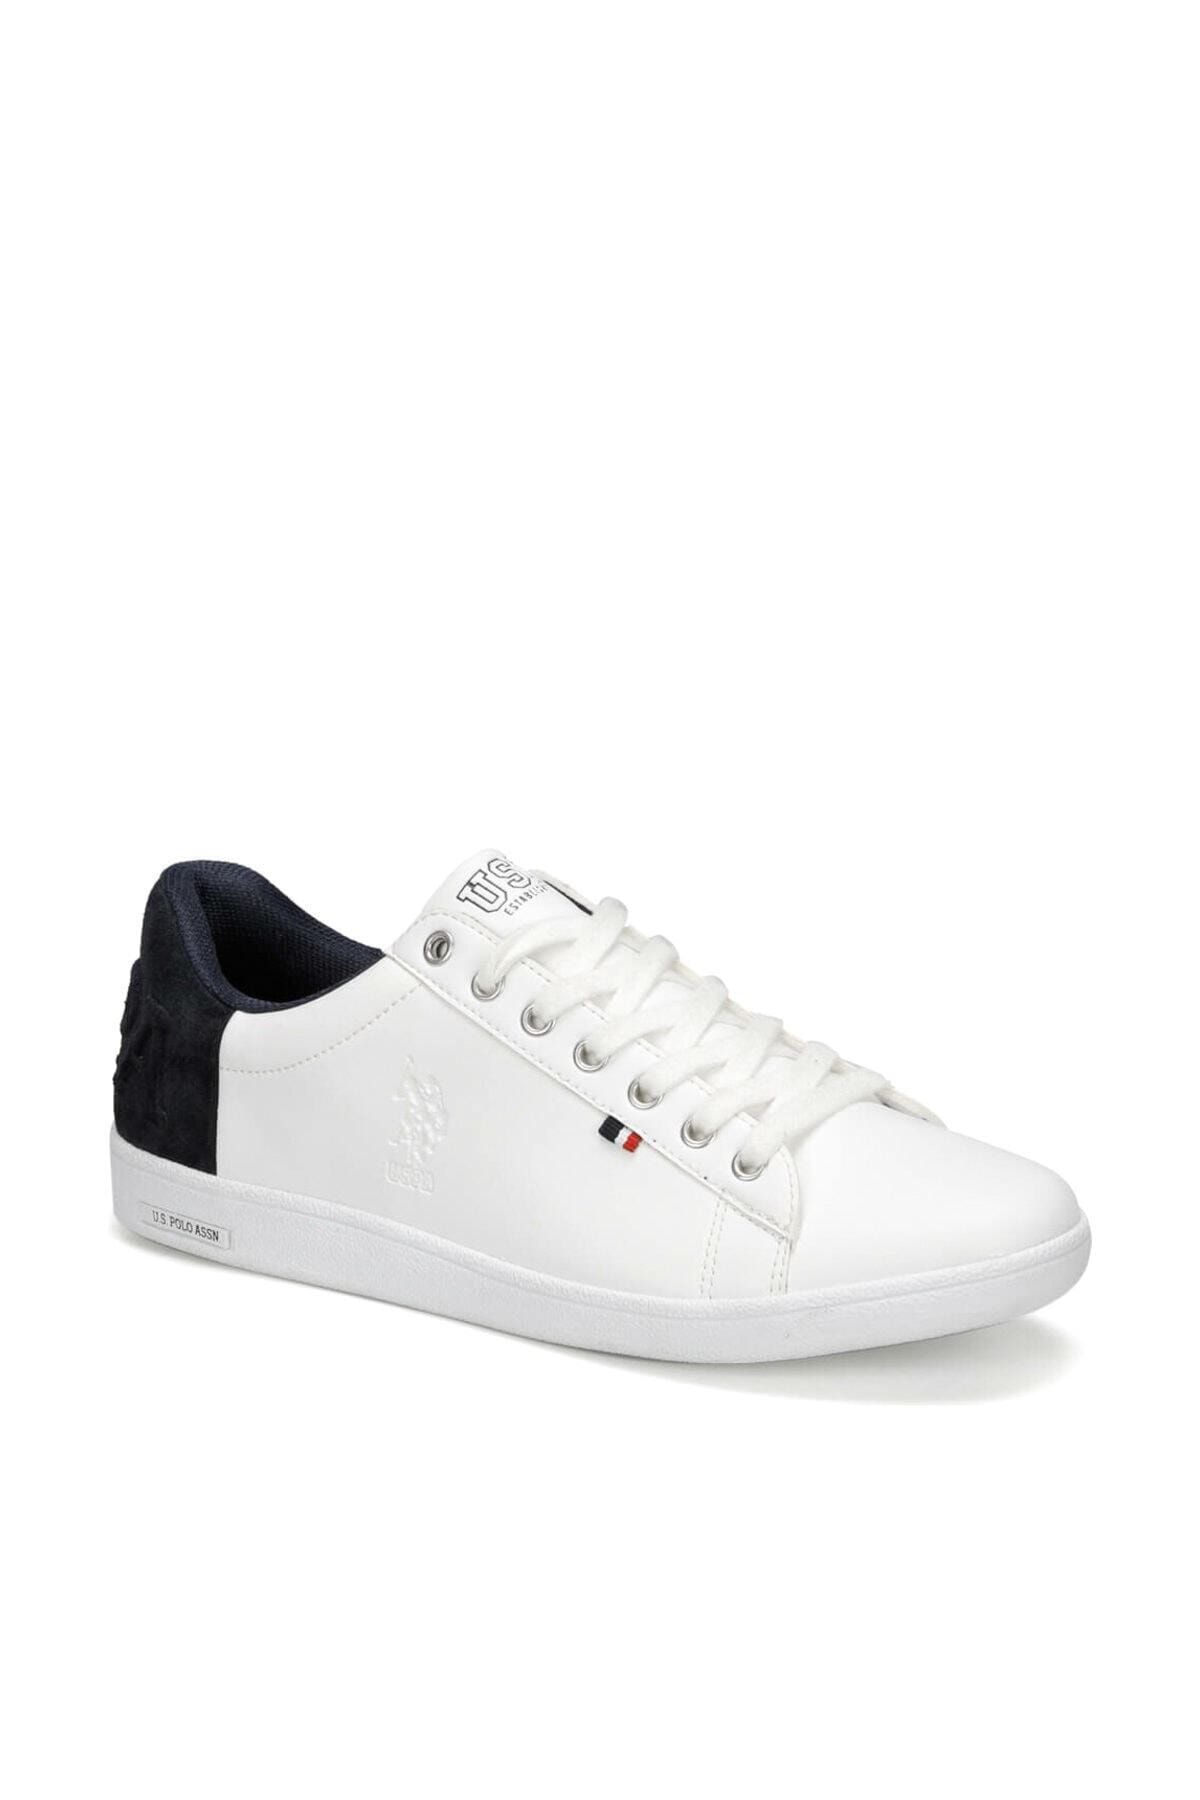 U.S. Polo Assn. PEDRO 9PR Beyaz Erkek Sneaker Ayakkabı 100418078